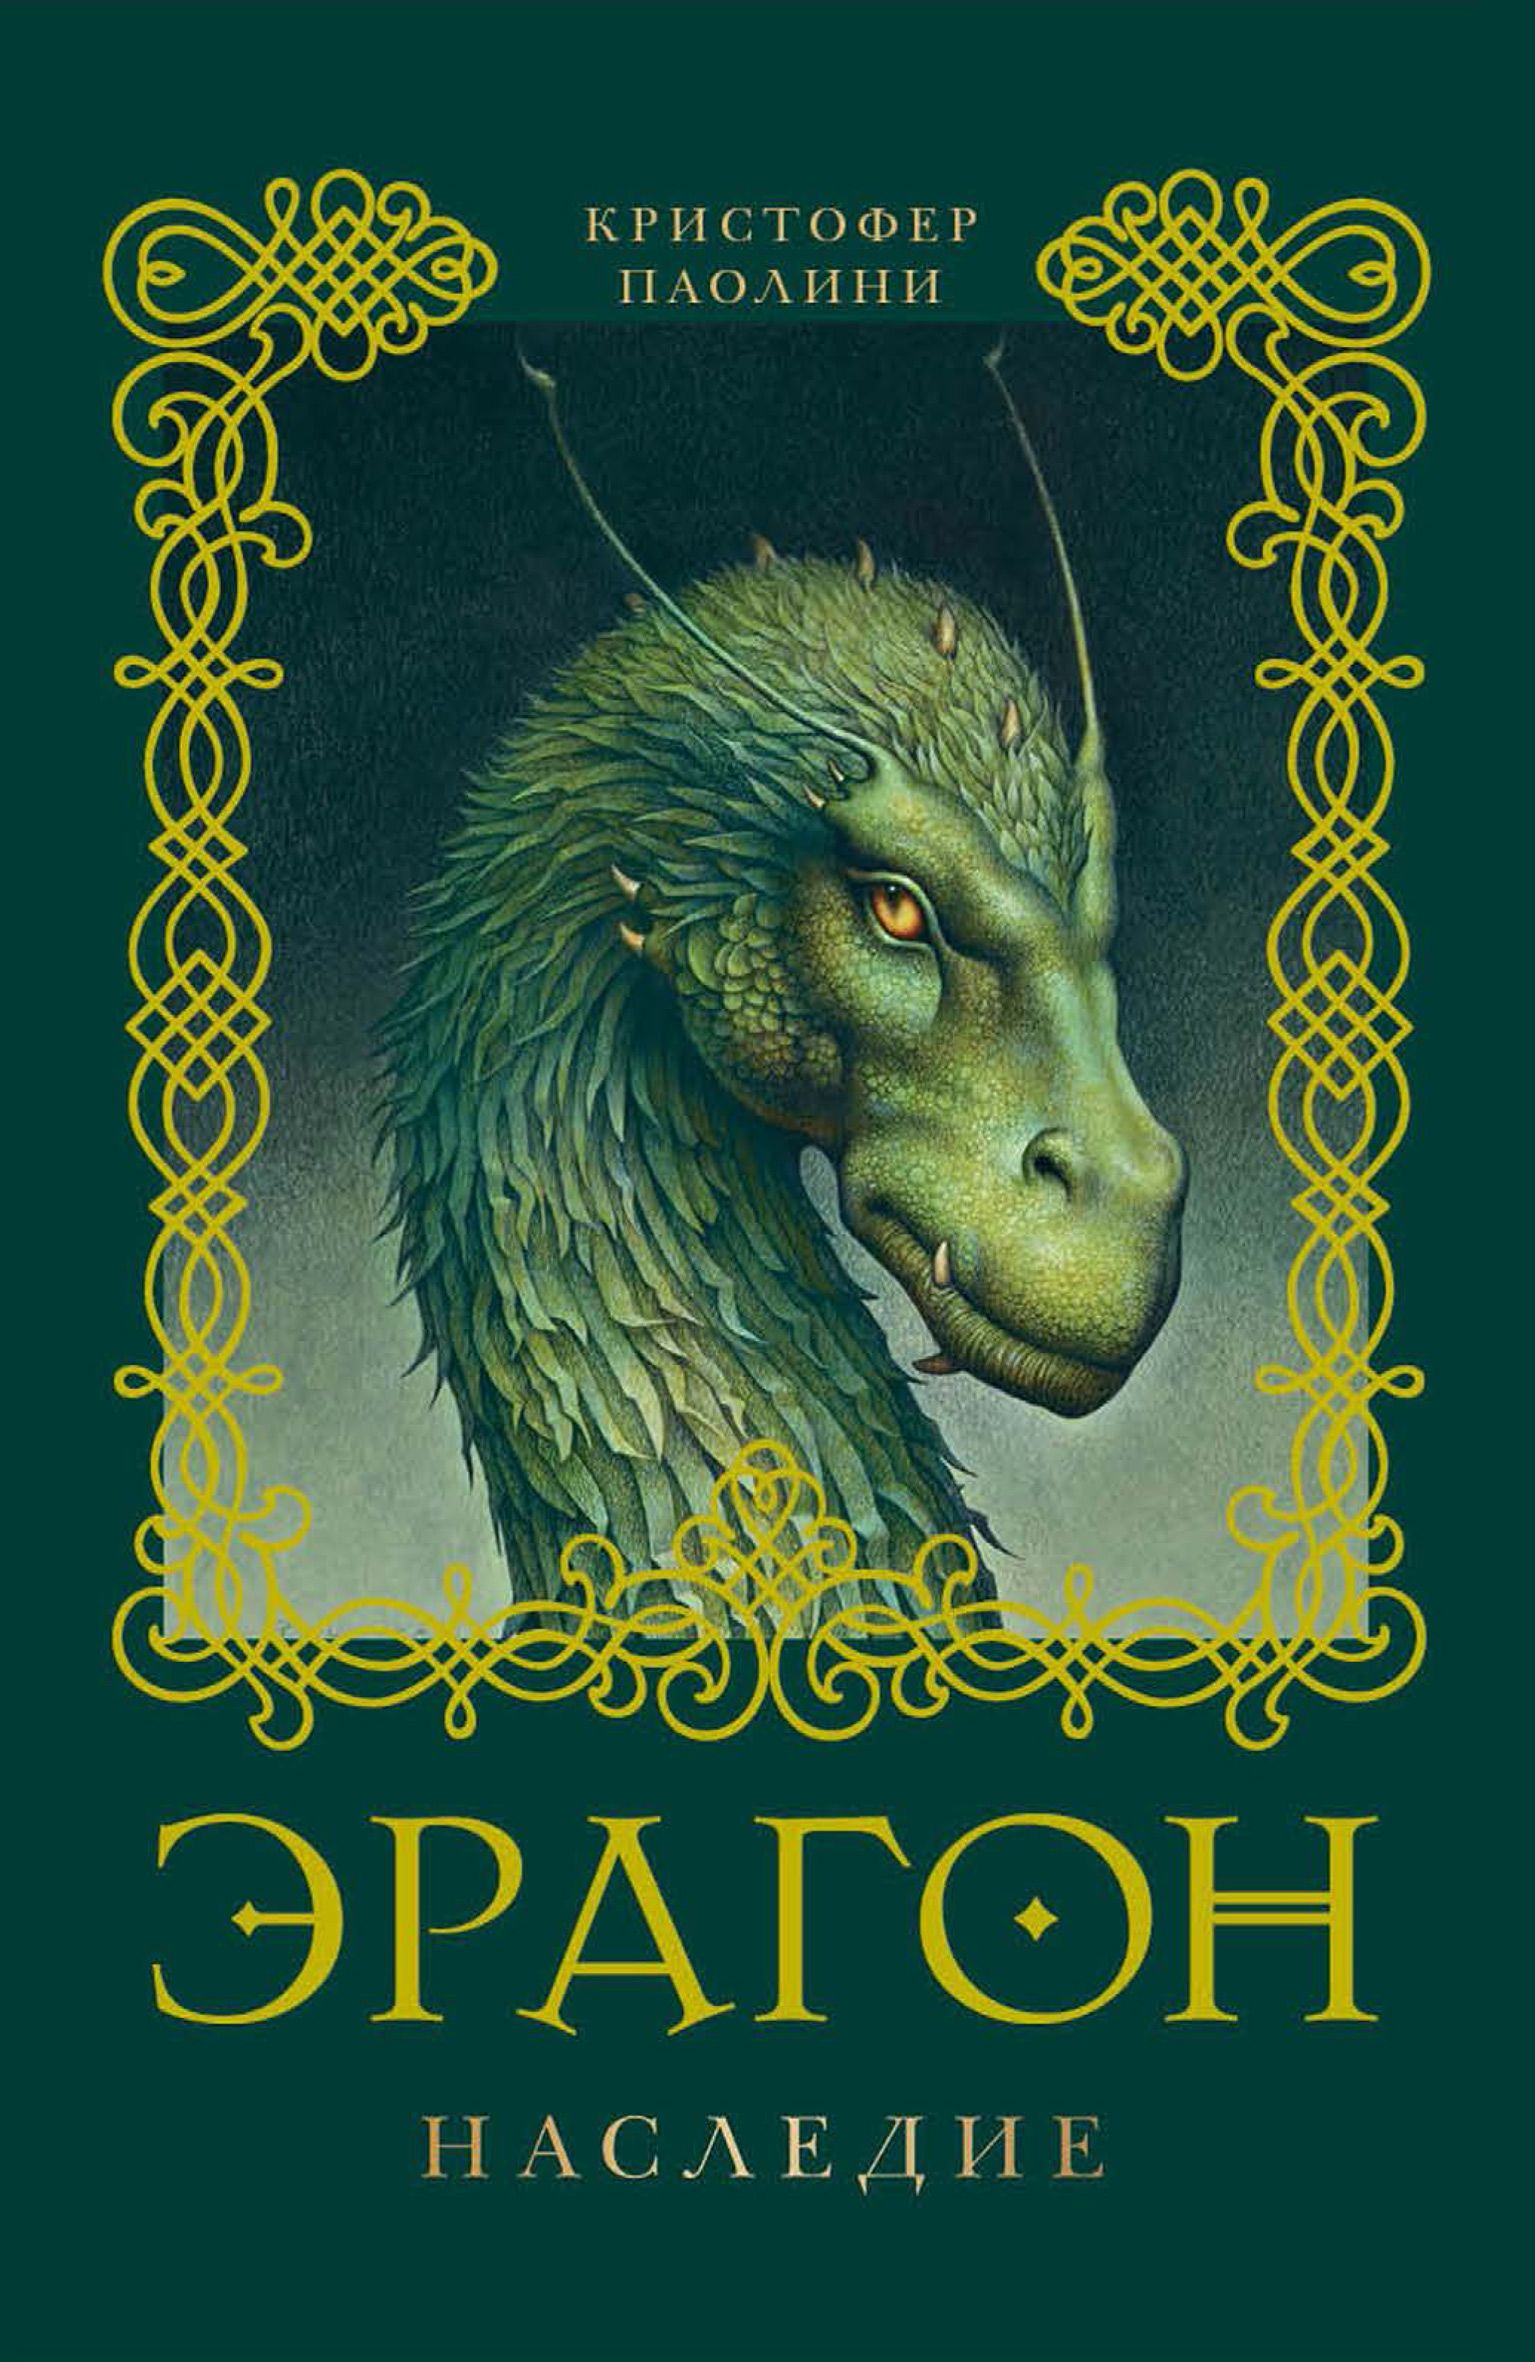 Фейри, магия и драконы: подростковая фантастика, которую интересно читать взрослым